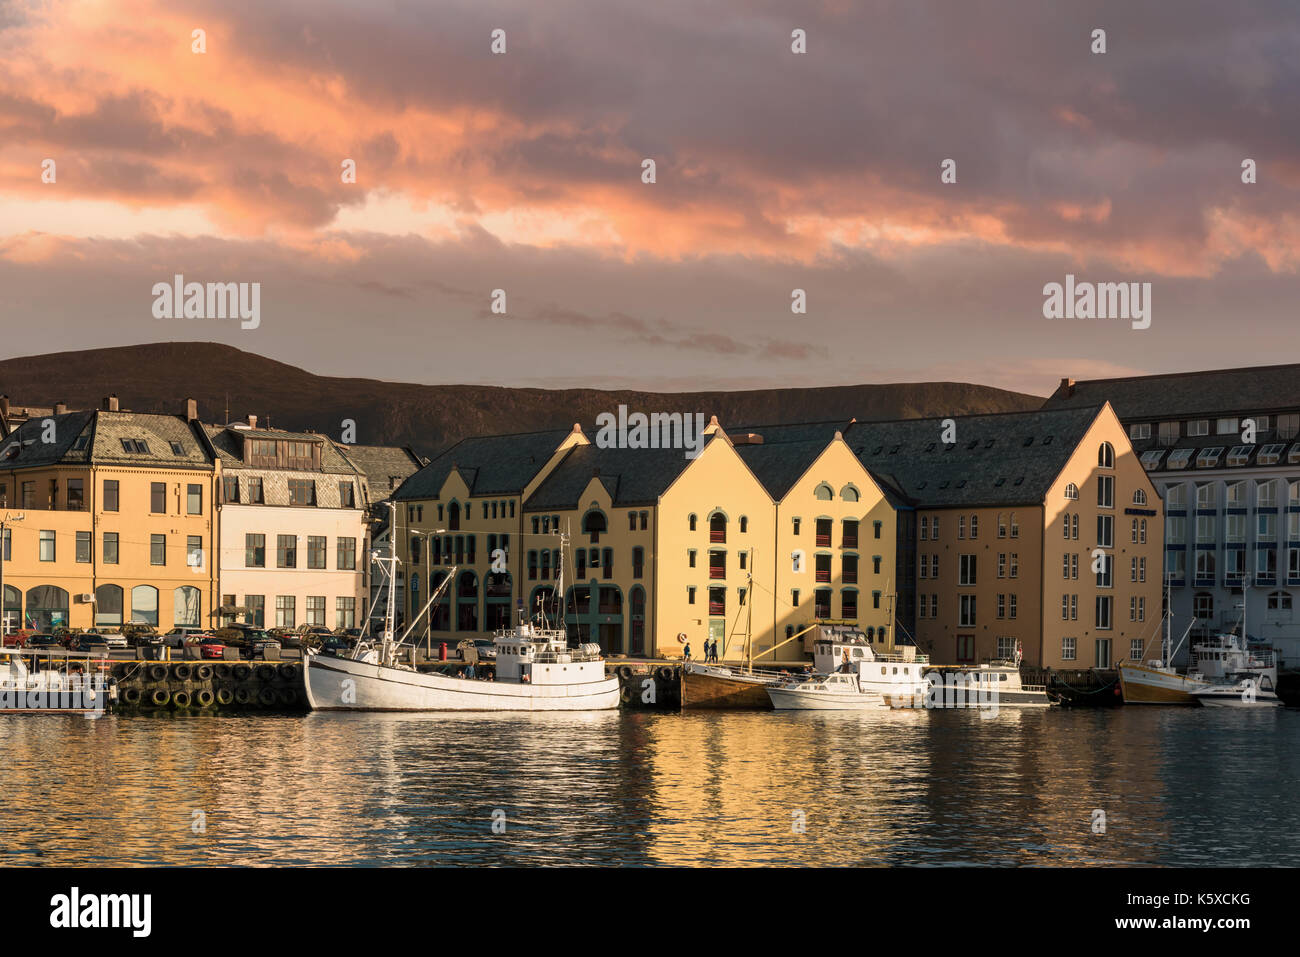 Colorido atardecer en Alesund ciudad portuaria Foto de stock